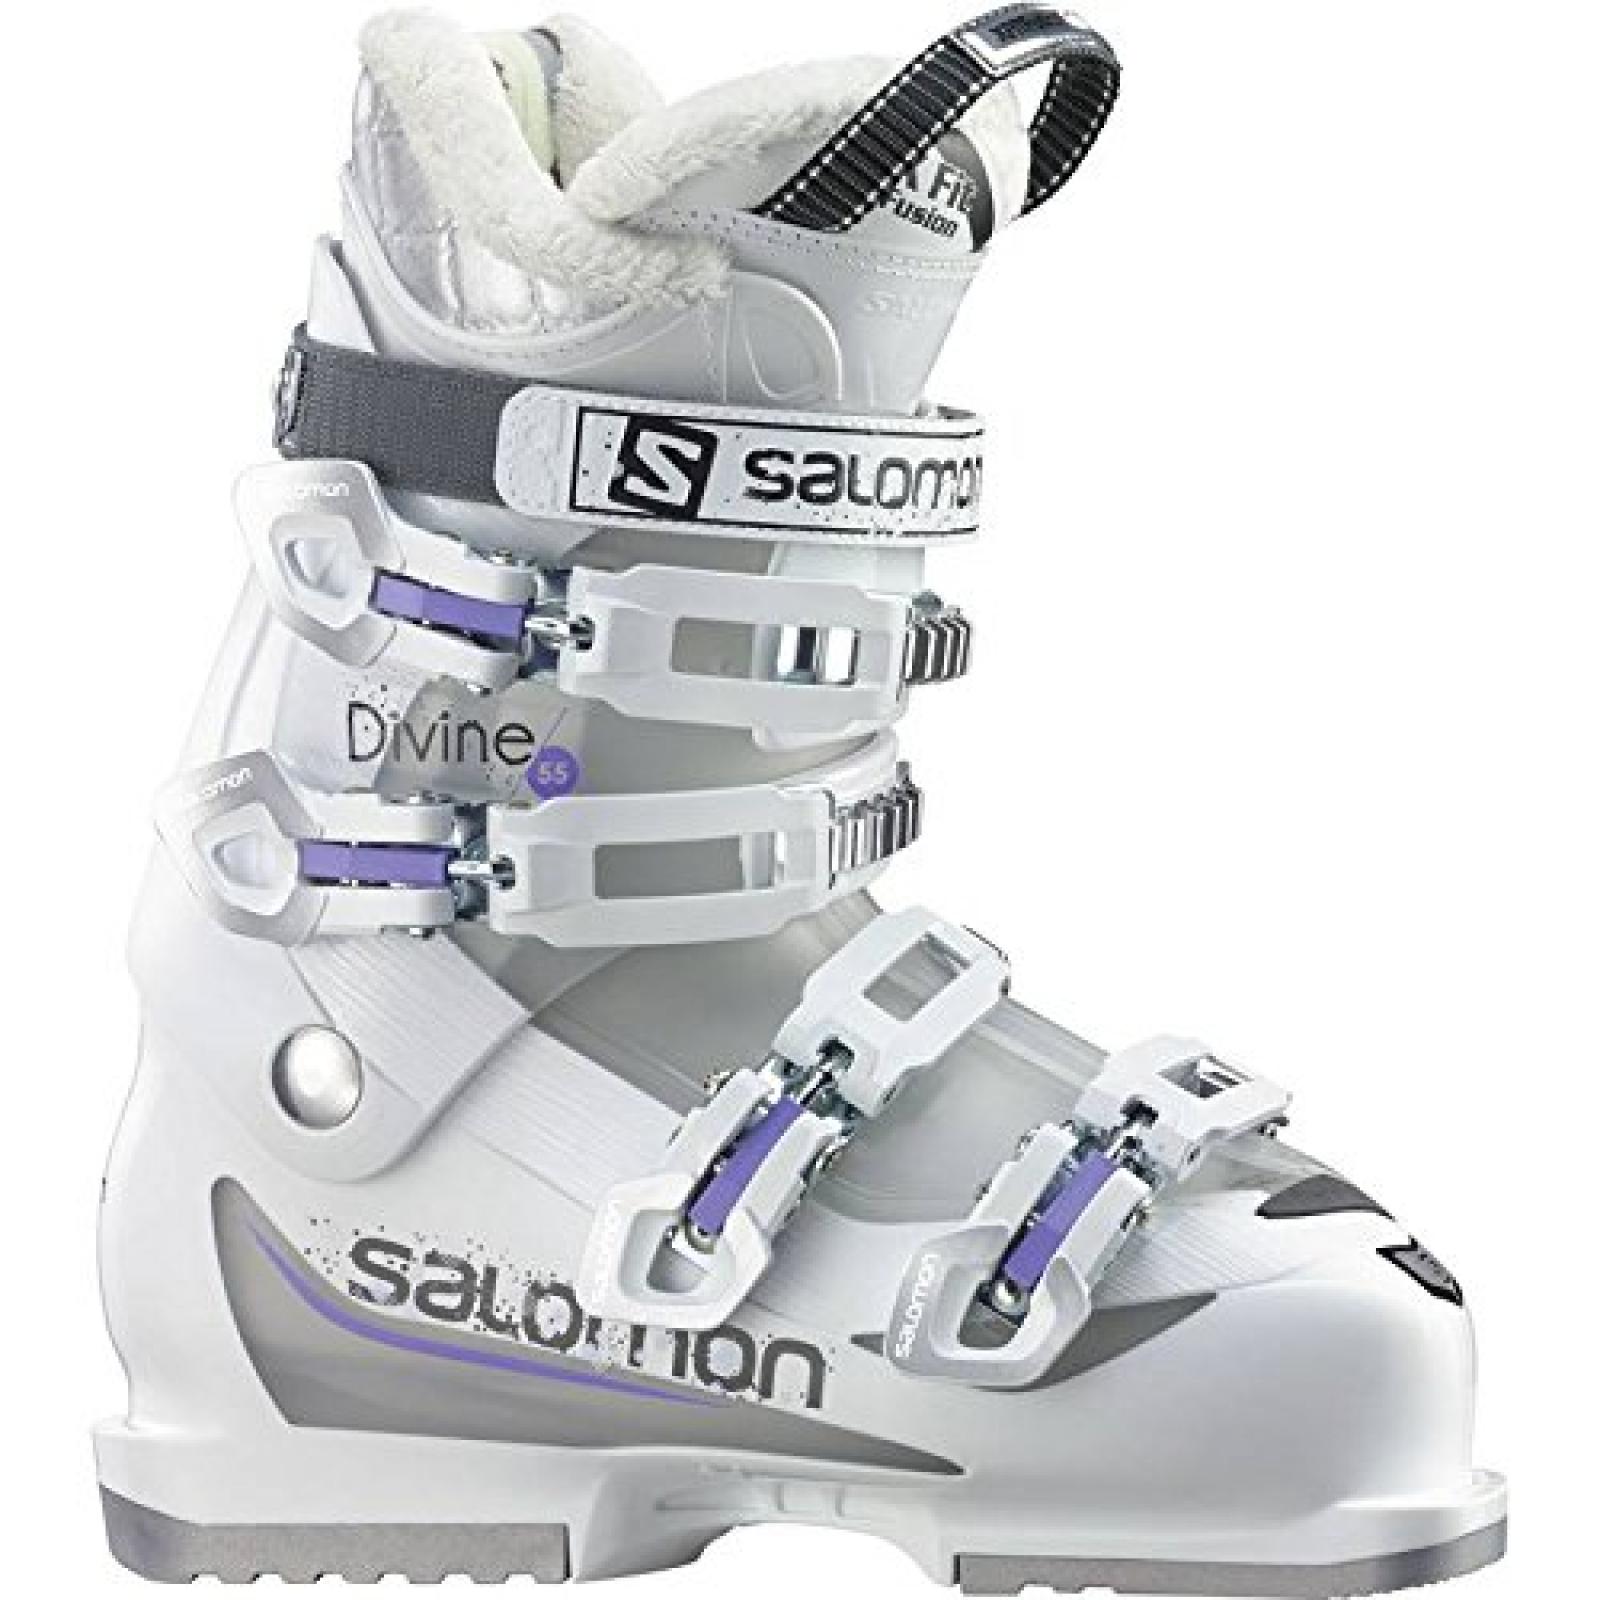 SALOMON "Divine 55" Damen Skischuhe, Modell 2014/15 